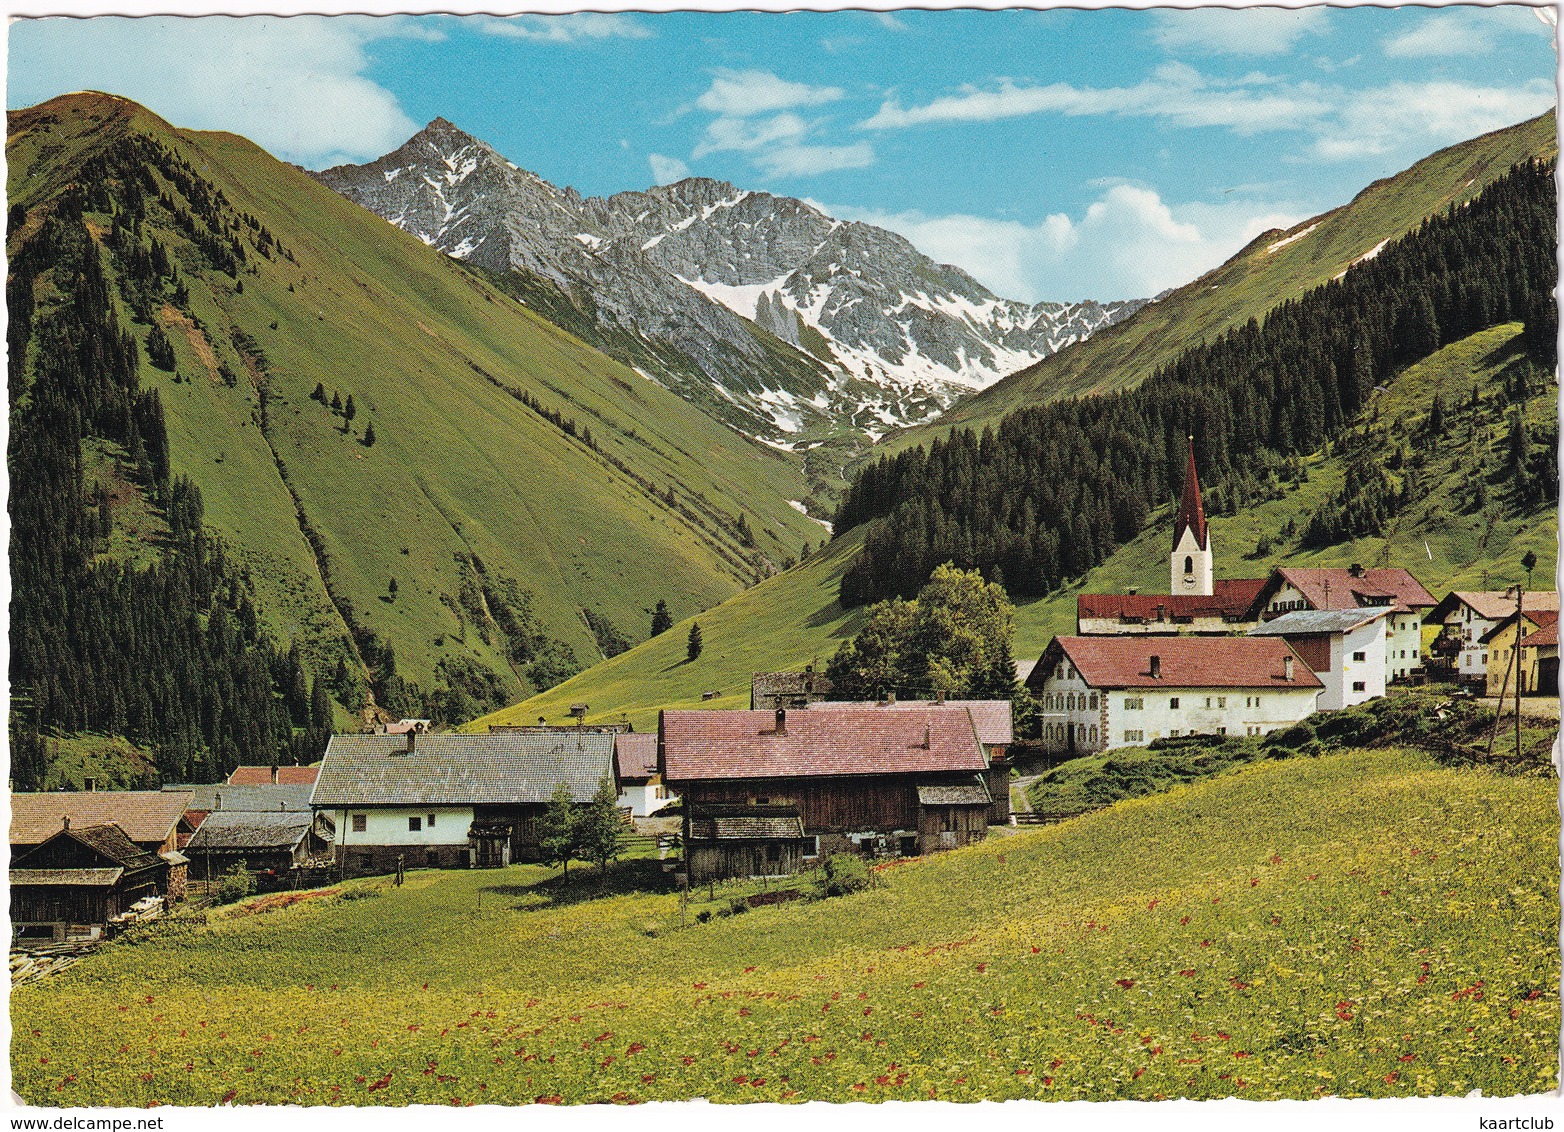 Berwang 1336 M / Tirol Mit Kamp 2015 M Und Roter Stein 2369 M - Berwang